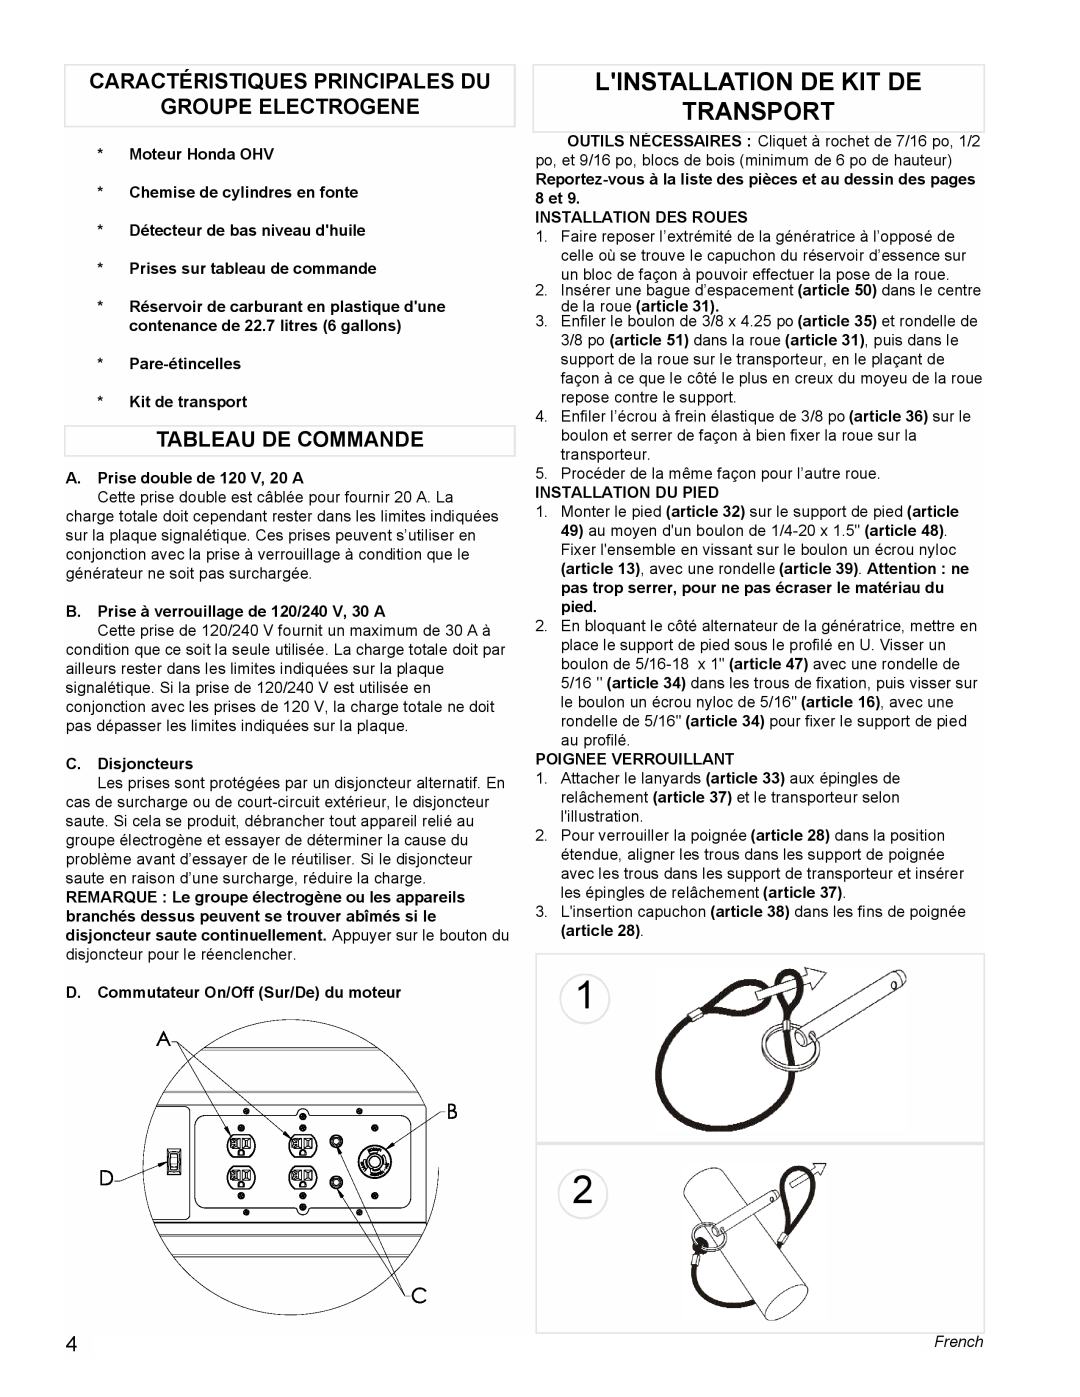 Powermate PL0495503 manual Linstallation De Kit De Transport, Caractéristiques Principales Du, Groupe Electrogene, French 